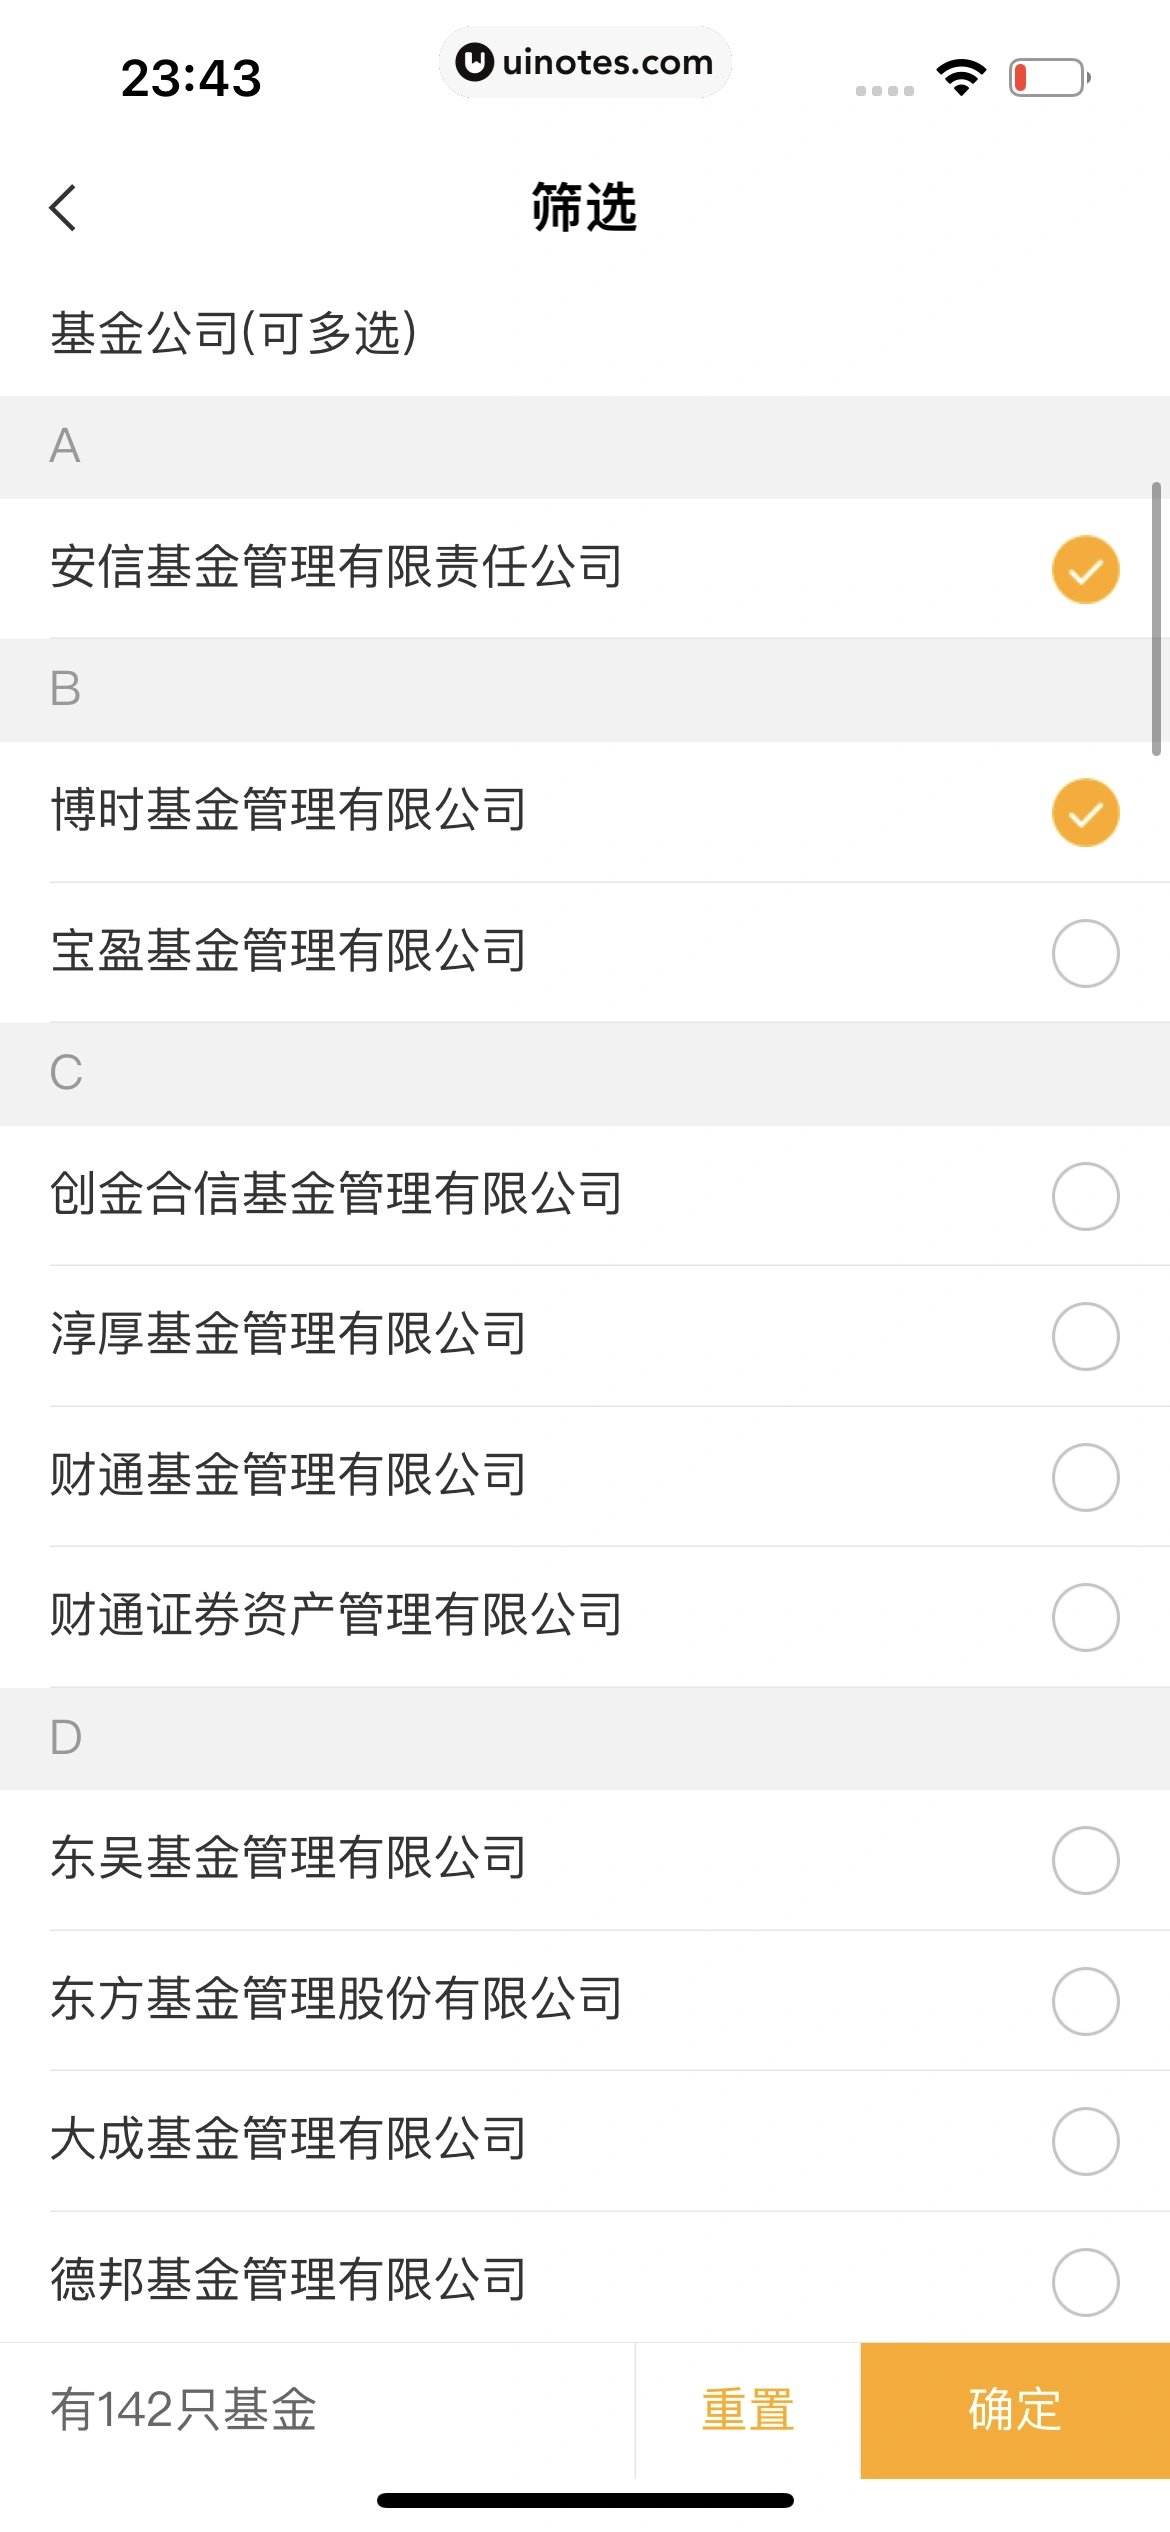 中国农业银行 App 截图 139 - UI Notes